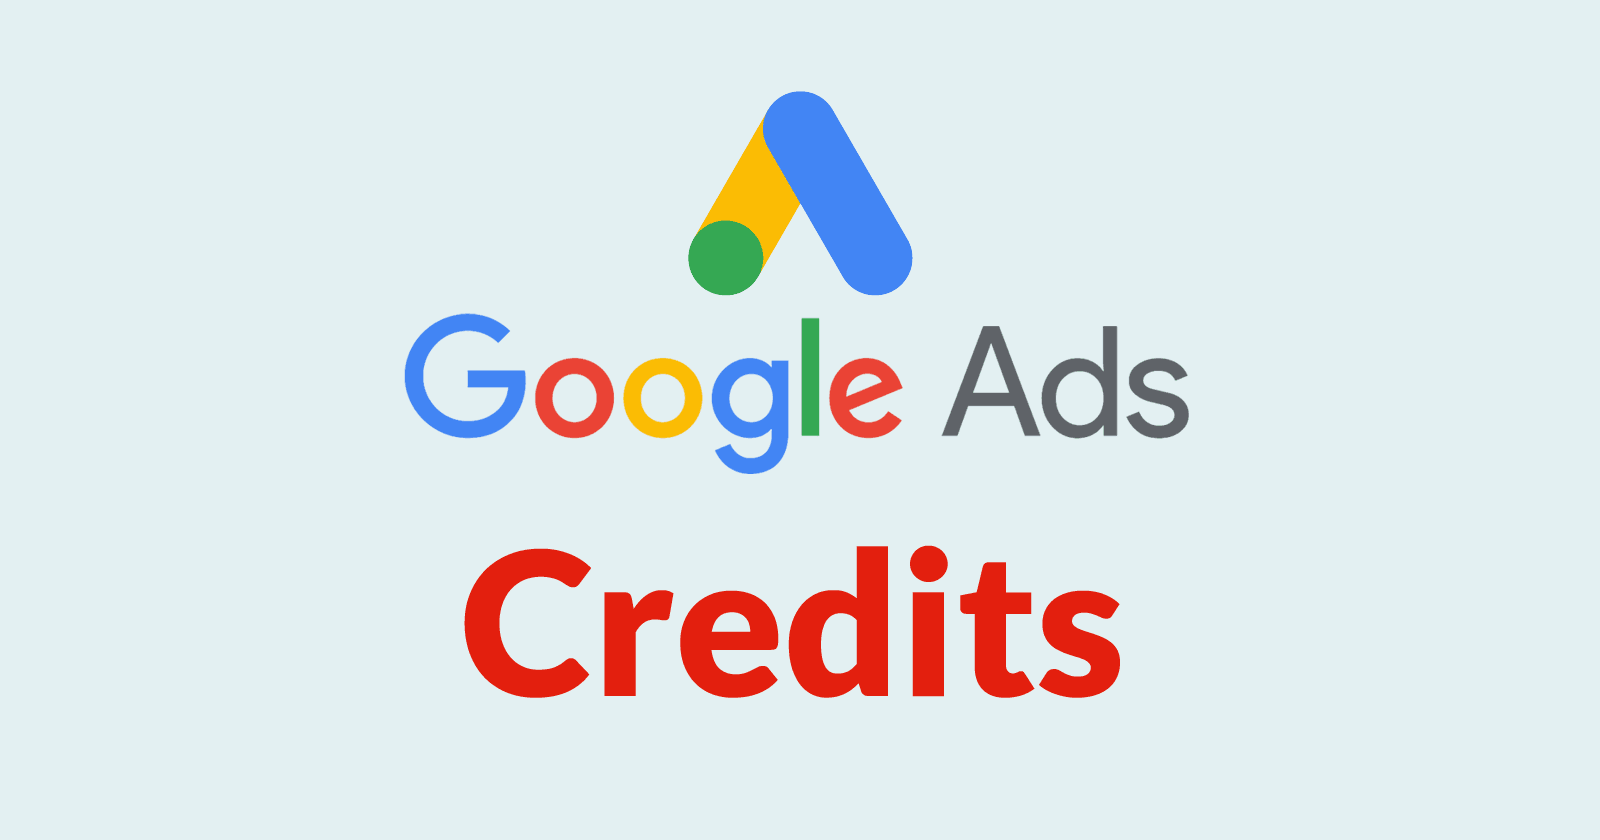 Google Ads Credits